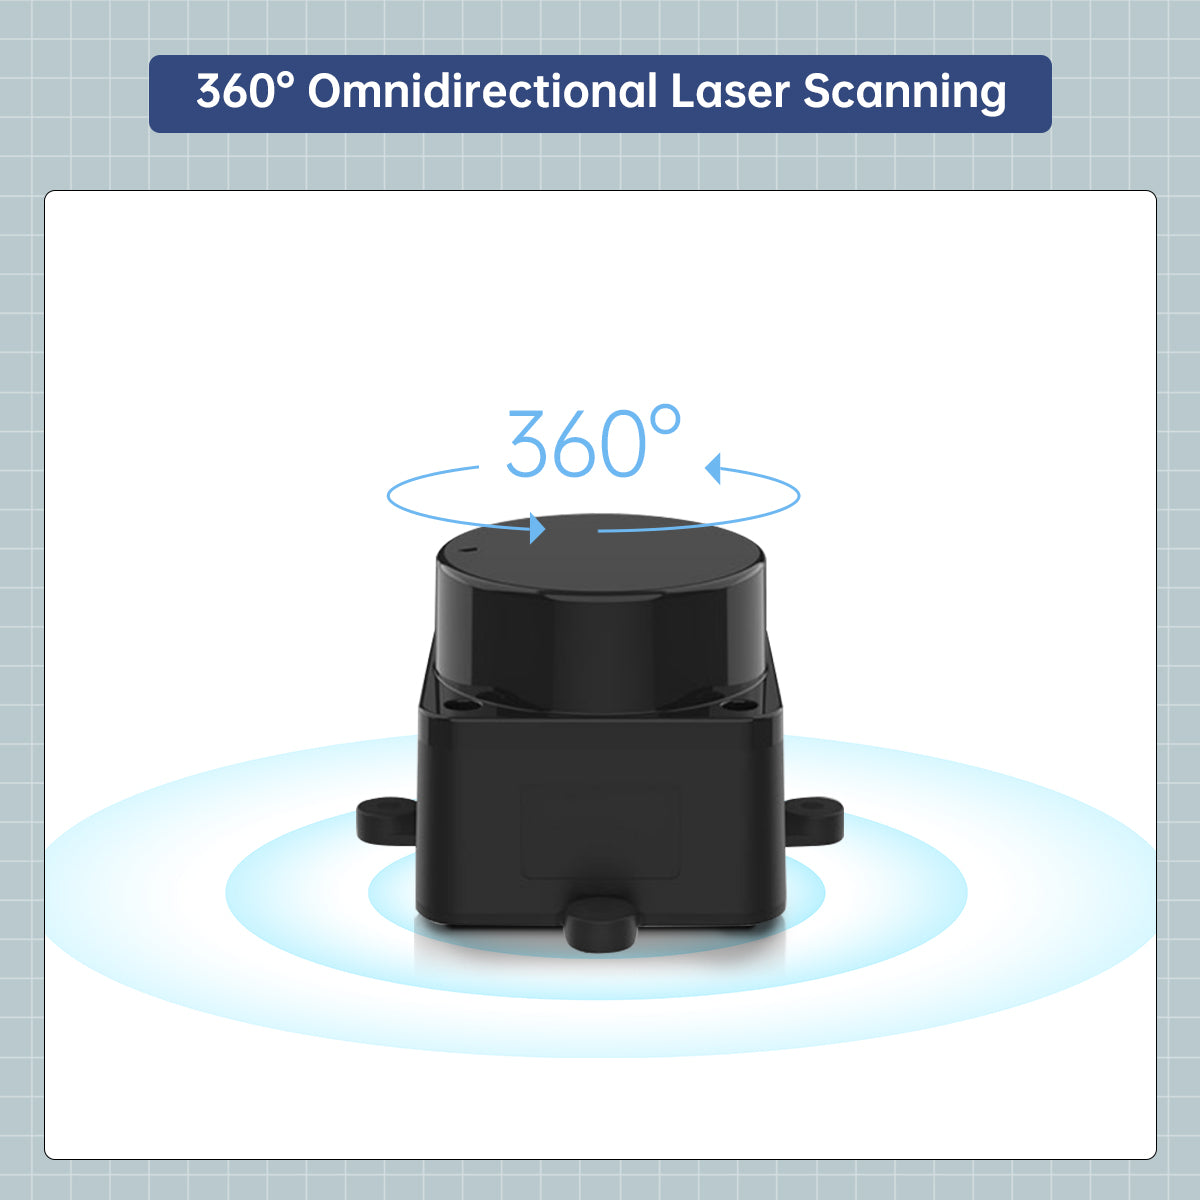 LD19 D500 Lidar Developer Kit 360 Degrees DTOF Laser Scanner Support ROS1 ROS2 Raspberry Pi Jetson Nano